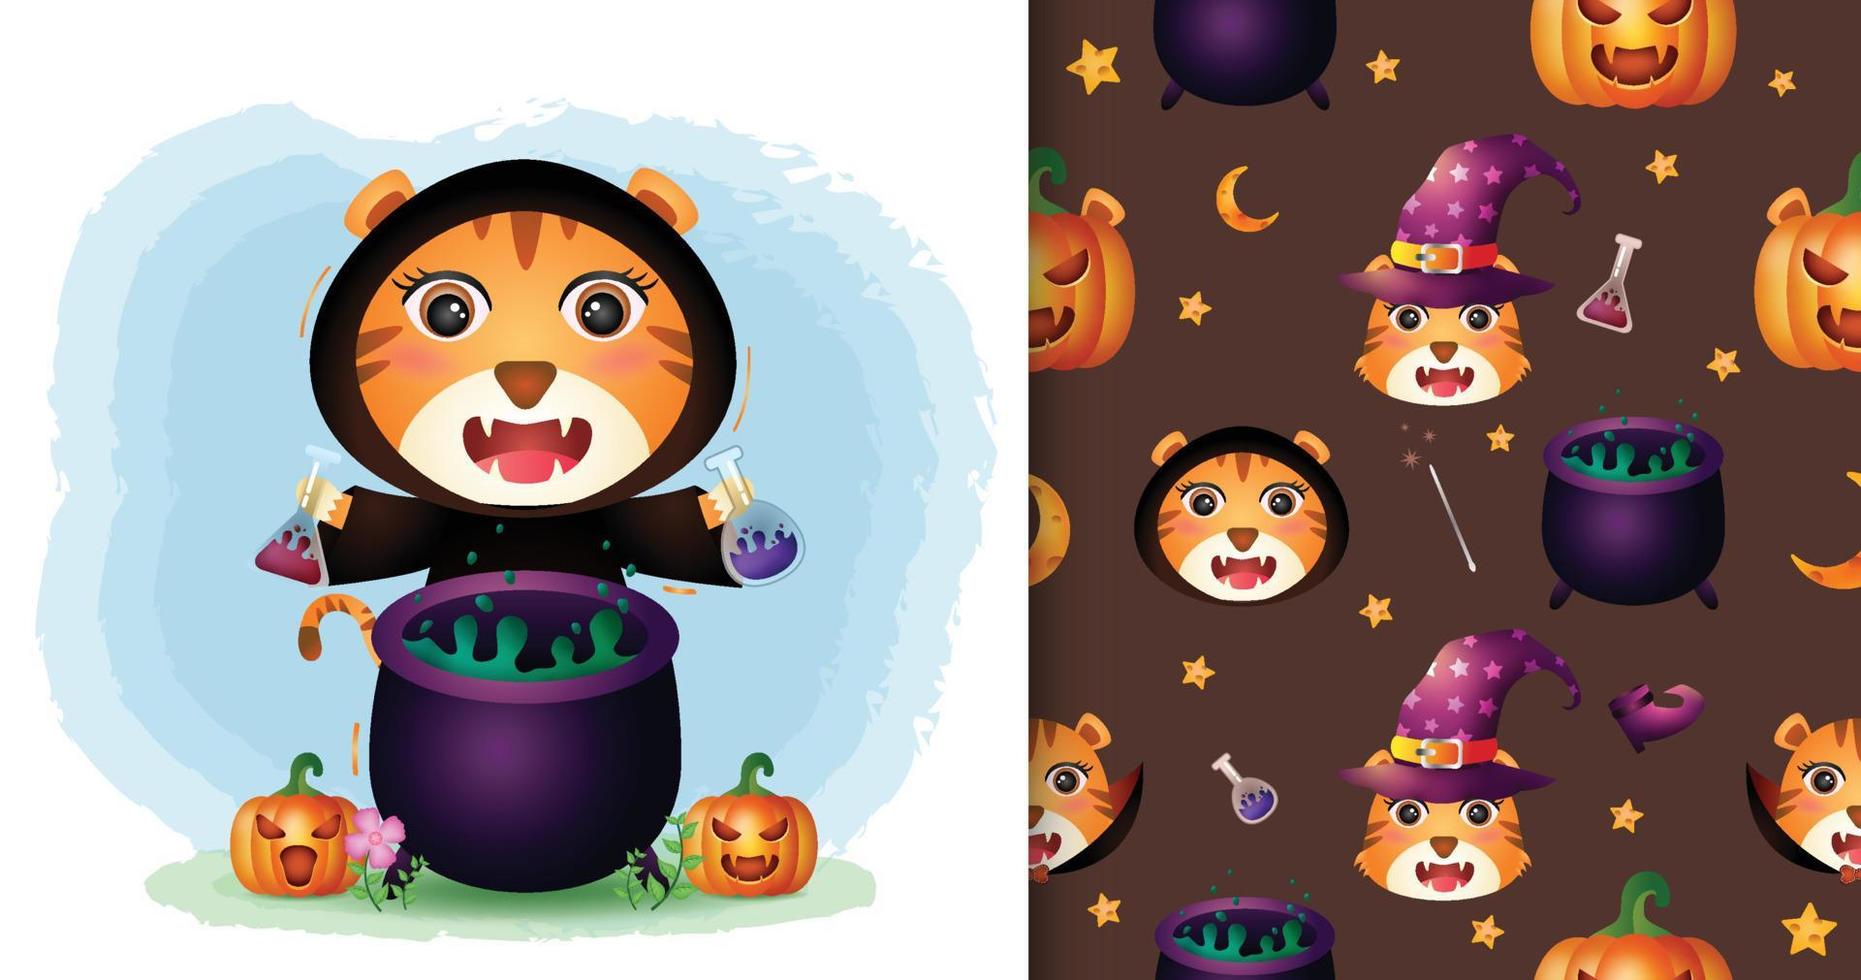 ein süßer tiger mit hexenkostüm halloween charaktersammlung. nahtlose Muster- und Illustrationsdesigns vektor